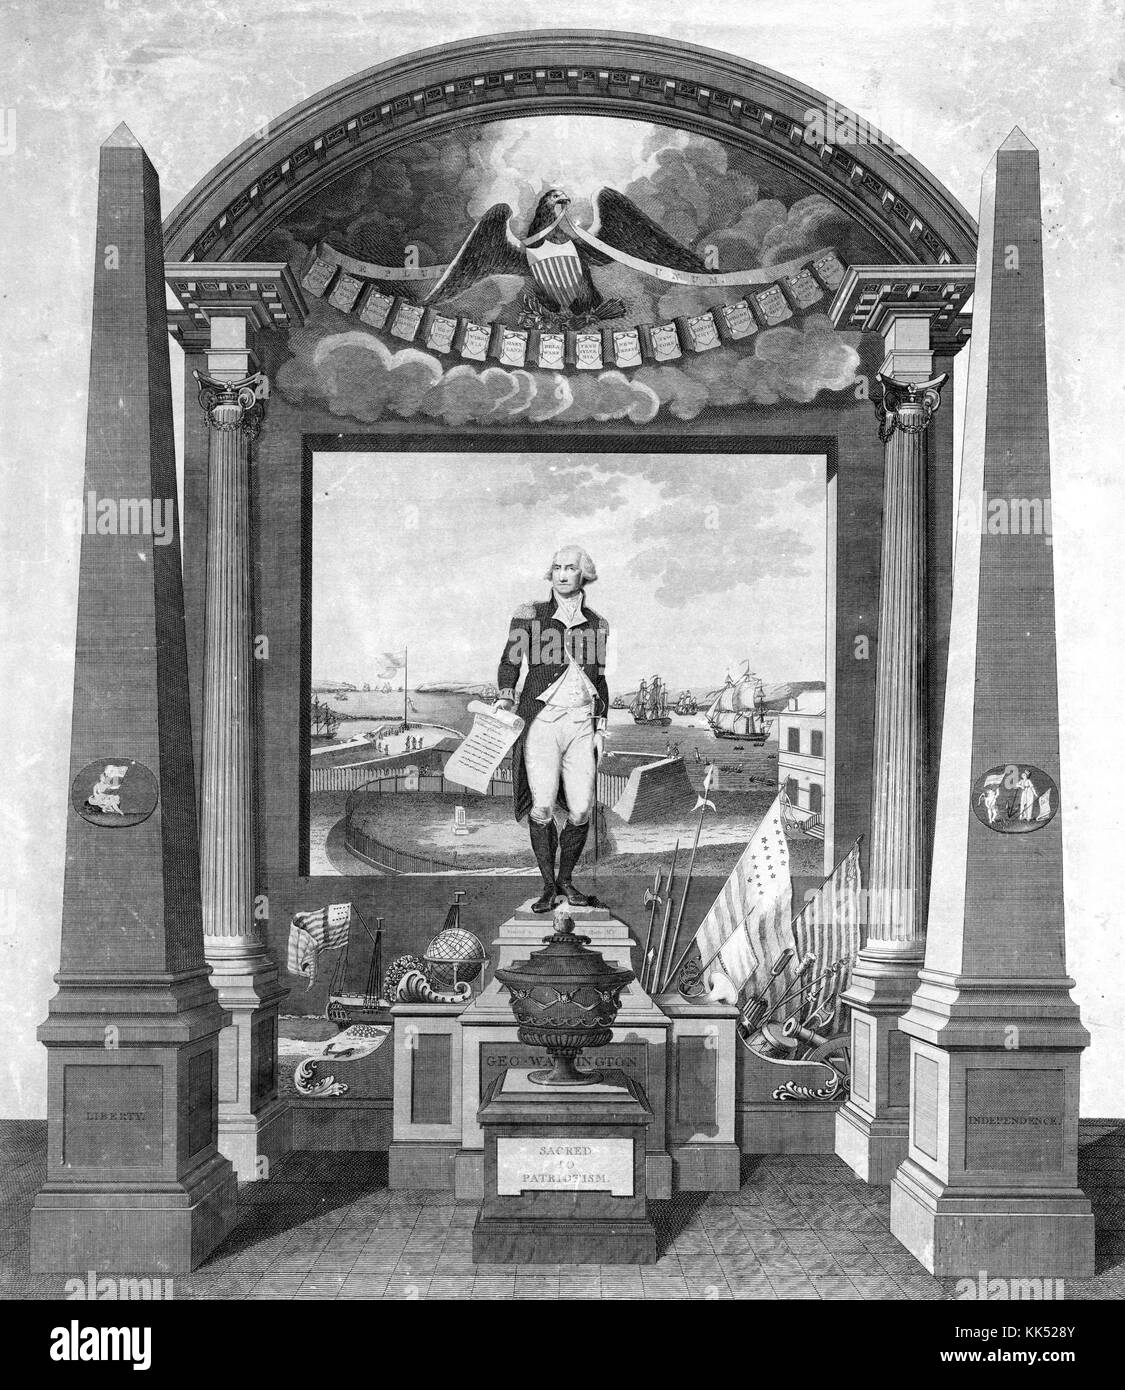 Portrait gravé de George Washington, la figure de Washington se dresse sur un piédestal en tenant son discours d'adieu dans sa main droite, 1798. à partir de la bibliothèque publique de new york. Banque D'Images